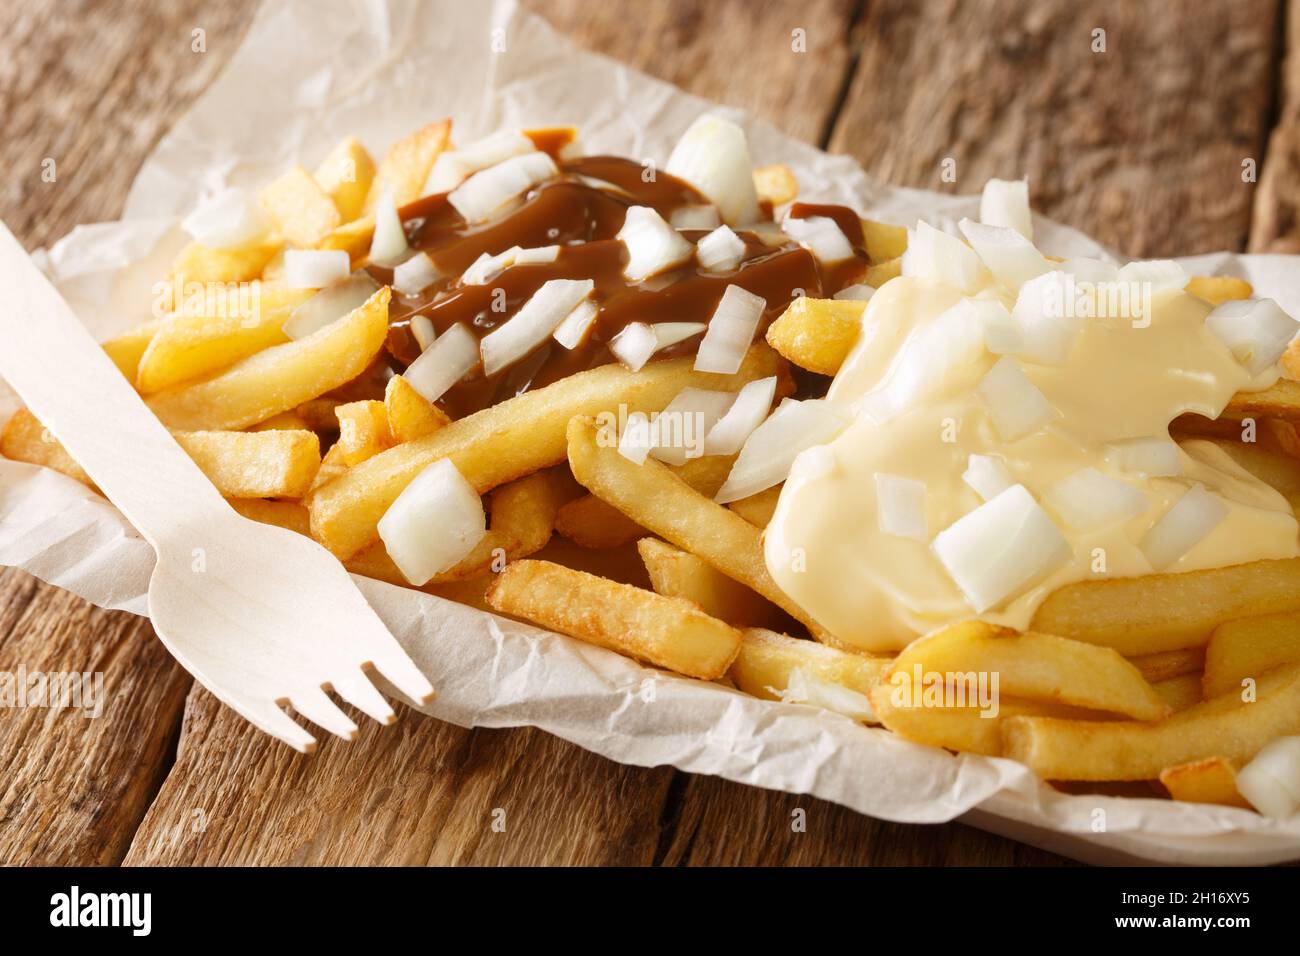 Patatje oorlog est un plat hollandais composé de frites nappées d'une mayonnaise, d'oignons finement hachés et d'une sauce aux arachides dans l'assiette o Banque D'Images